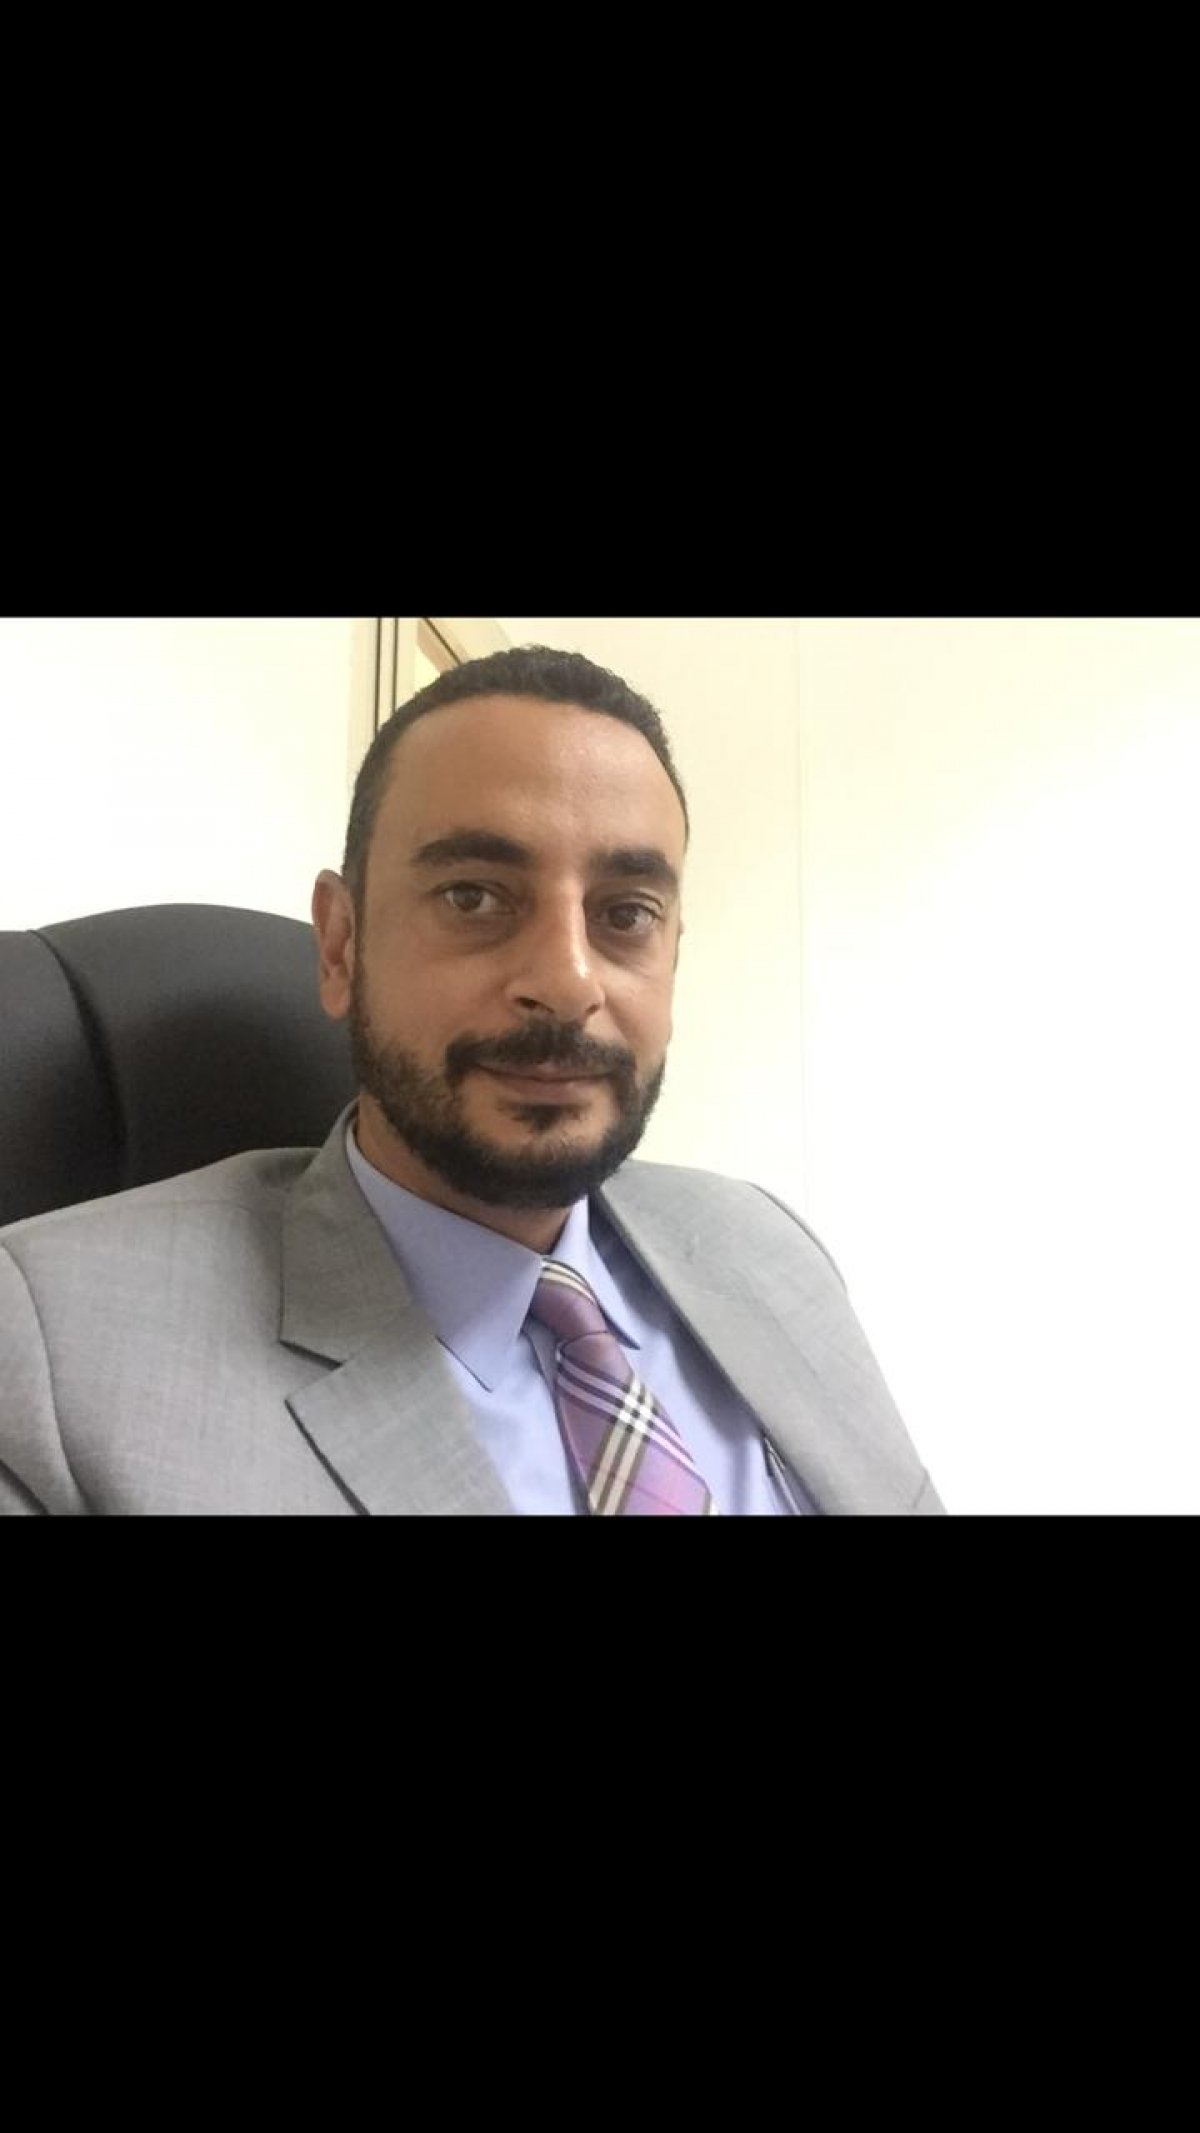 احمد فؤاد مهدى رئيسا للقطاع التجارى بشركه "اى كابيتال" للتطوير العقاري